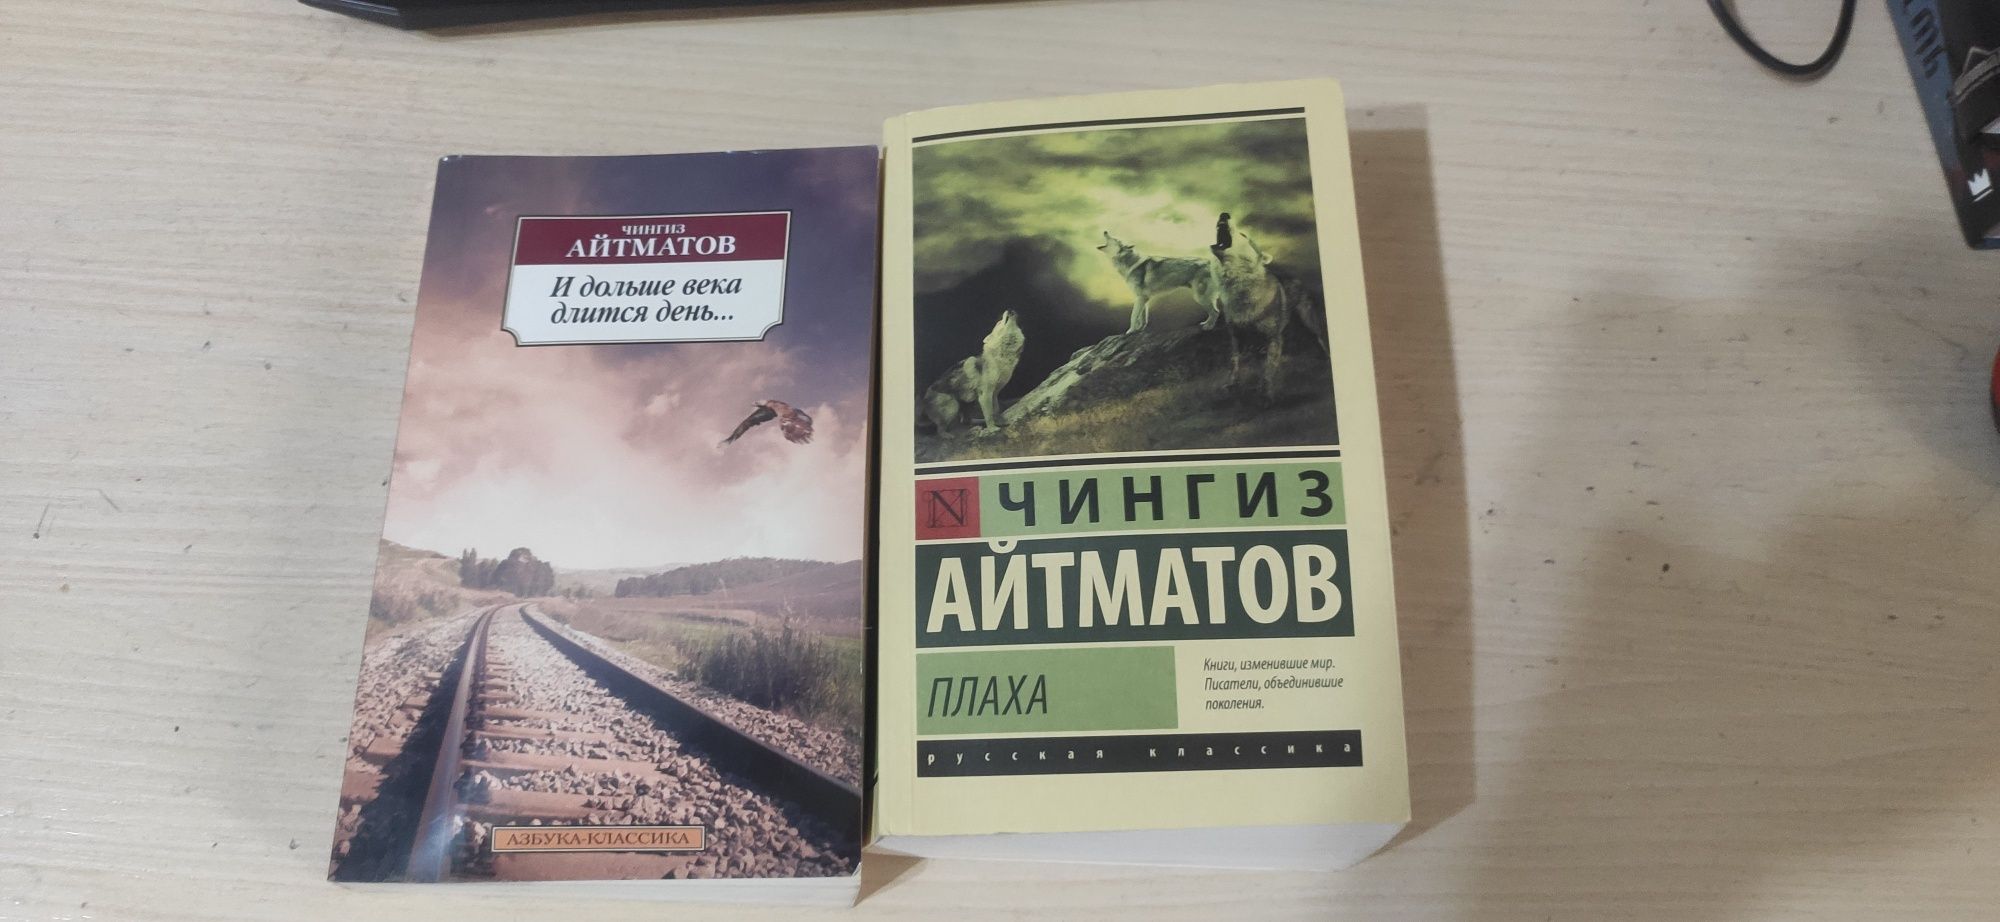 Продам книги , Ремарк , Стивен Кинг, Ч.Айтматов